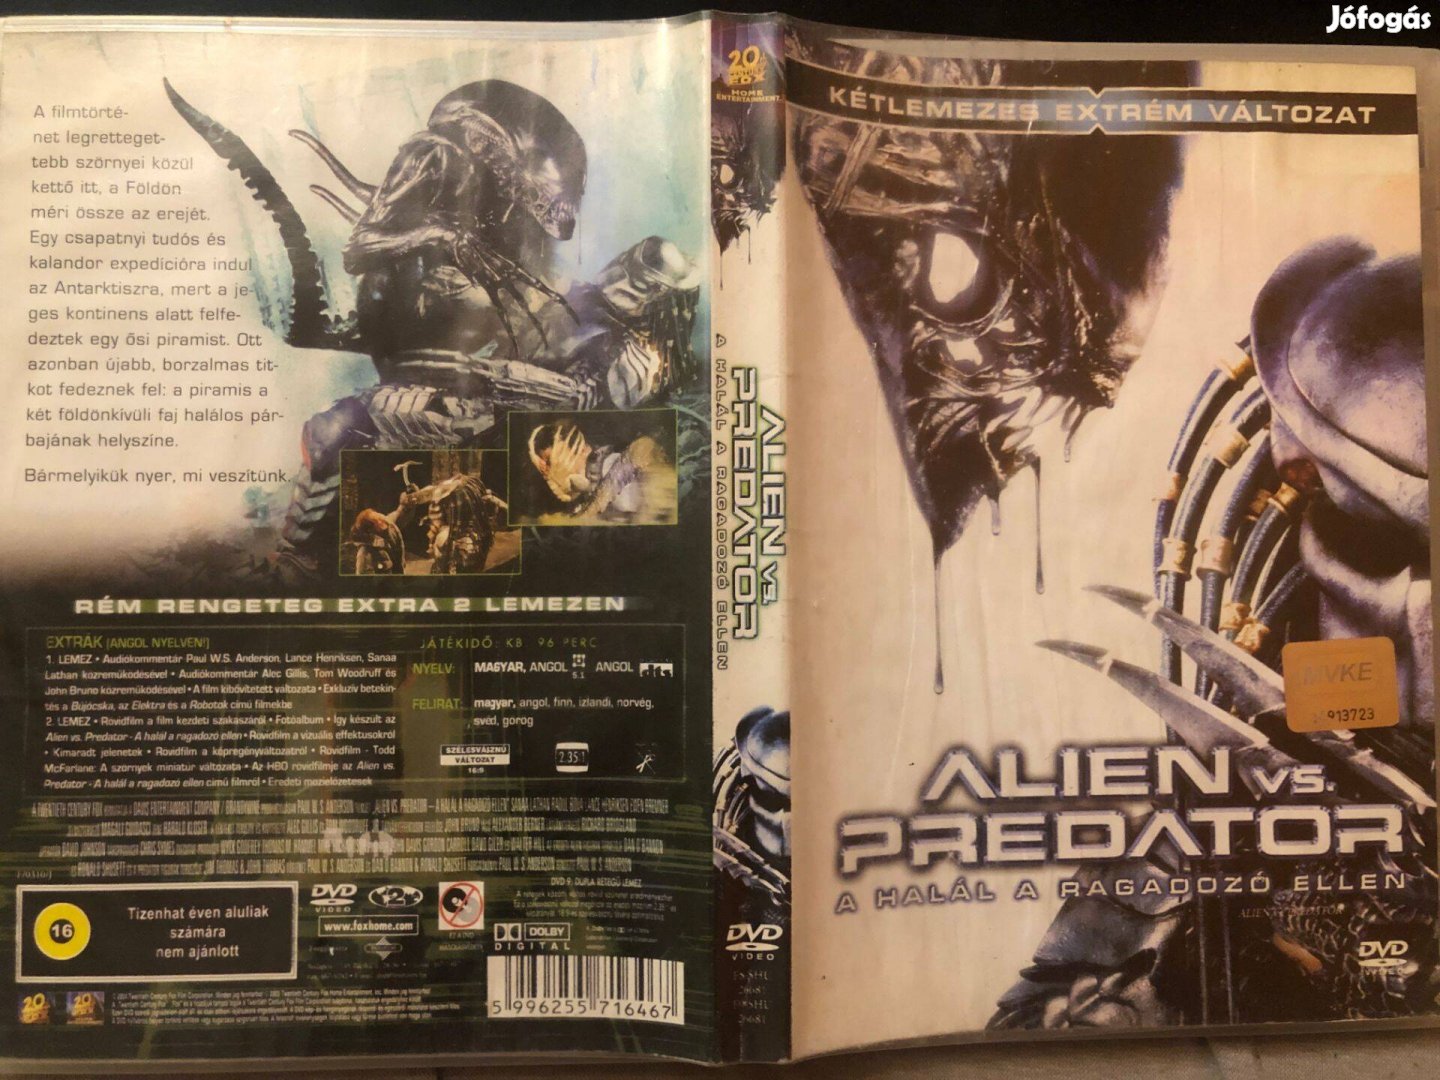 Alien vs. Predator Disc 2. DVD